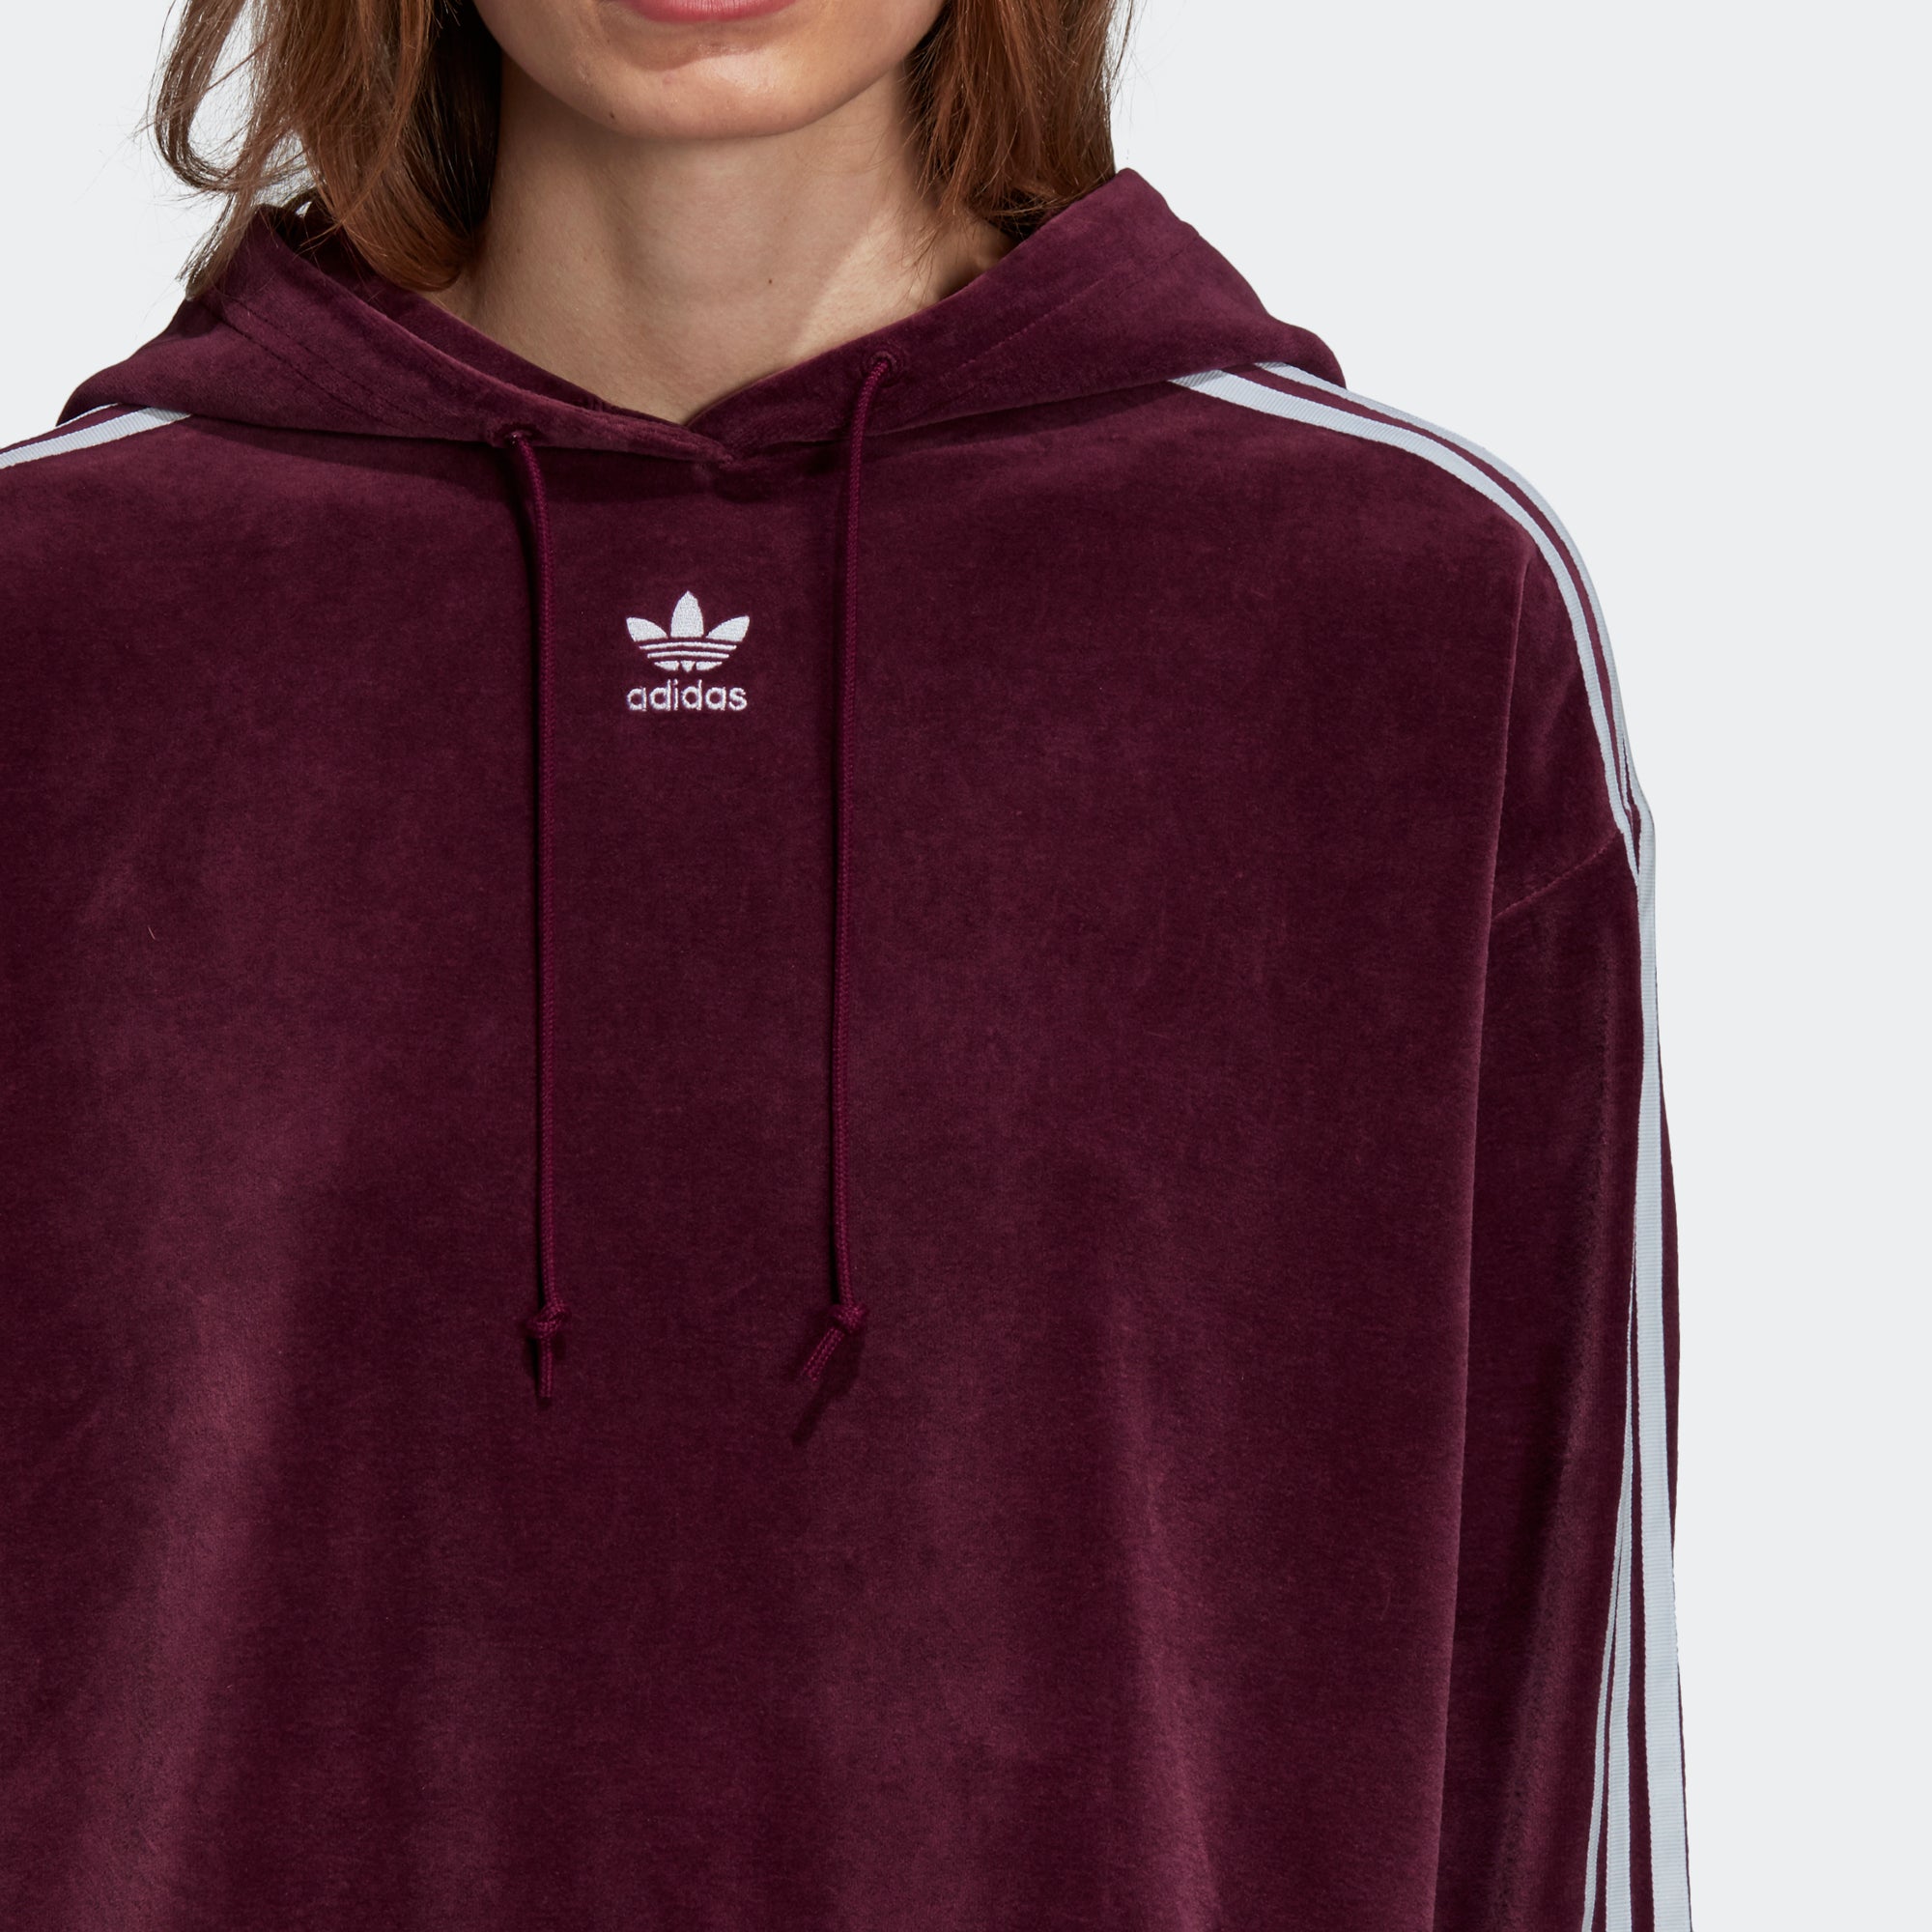 womens maroon adidas hoodie